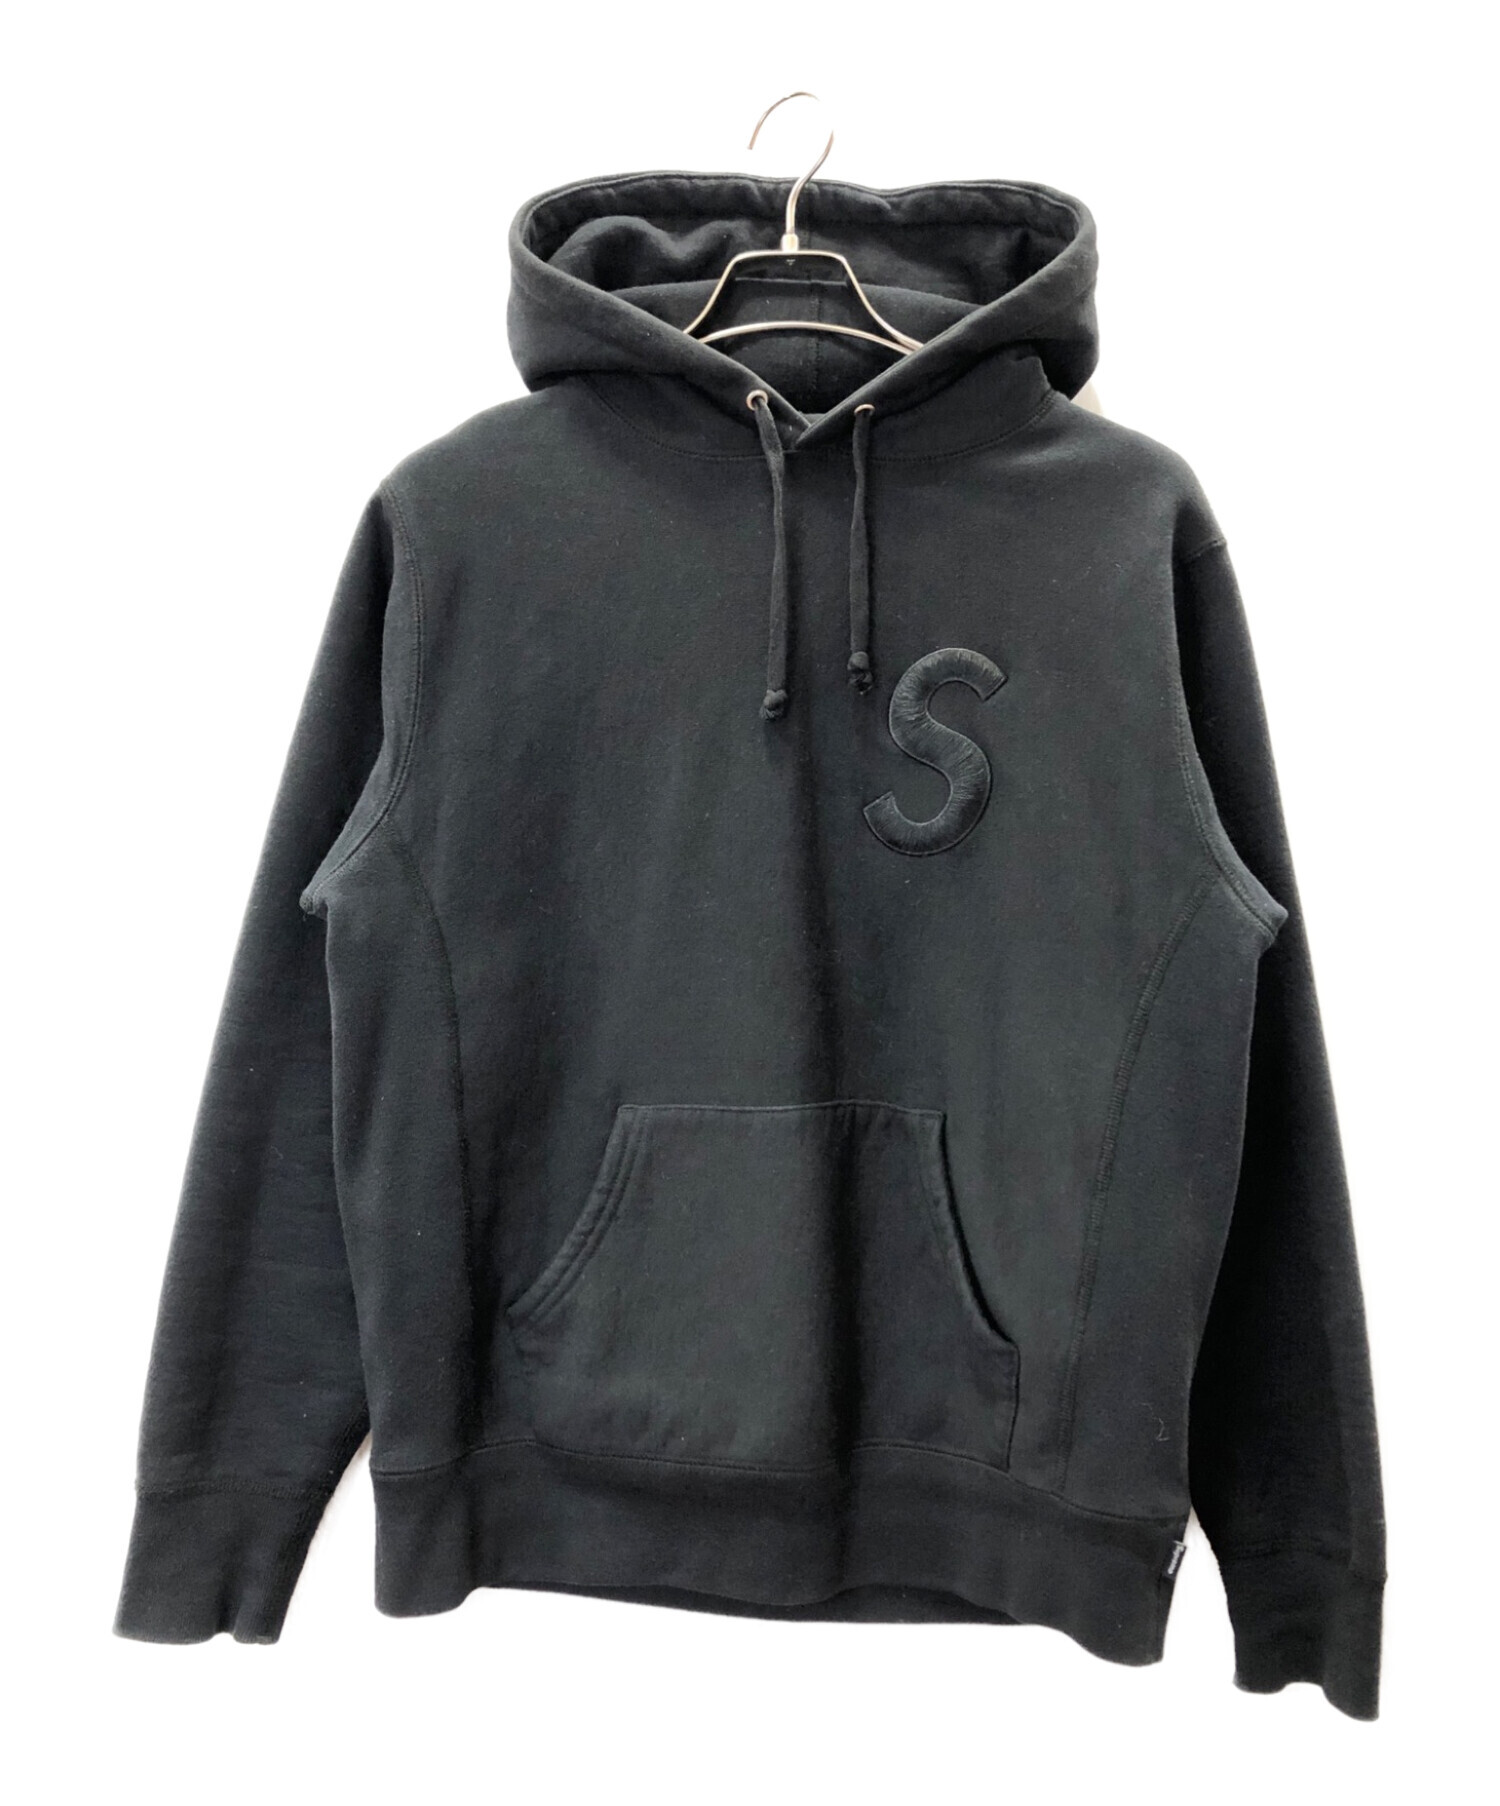 シミや穴色落ちはありますかSupreme Tonal “S” Logo Hooded Sweatshirt